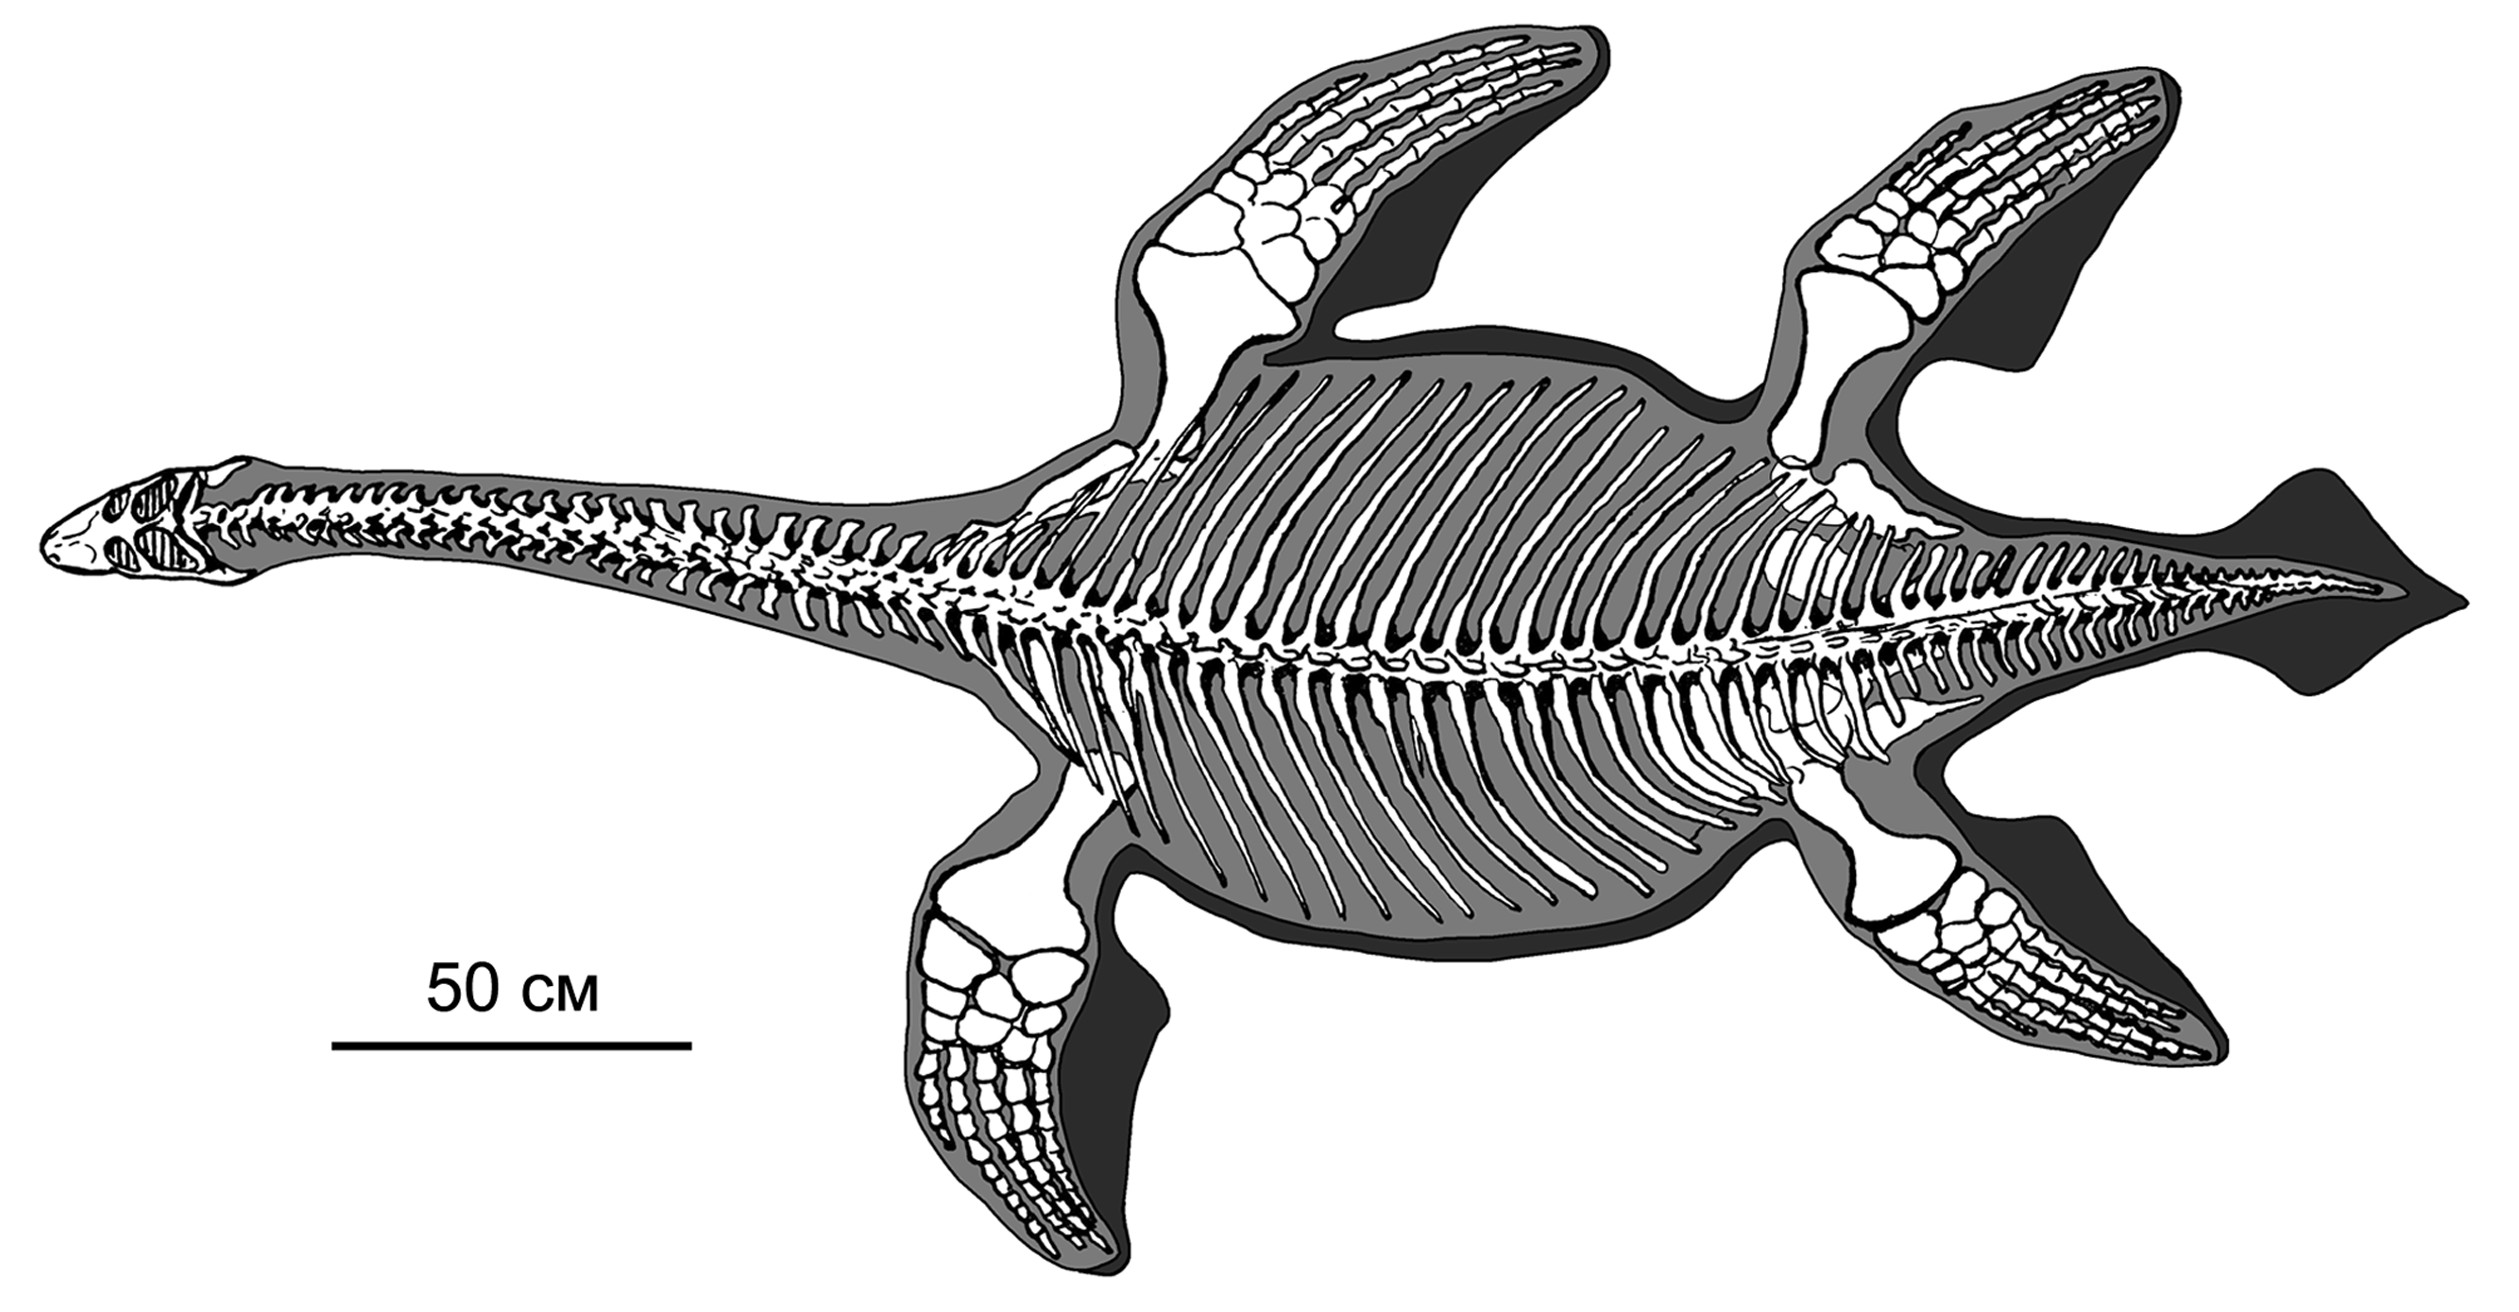 Хвост плезиозавра был горизонтальным, как у кита